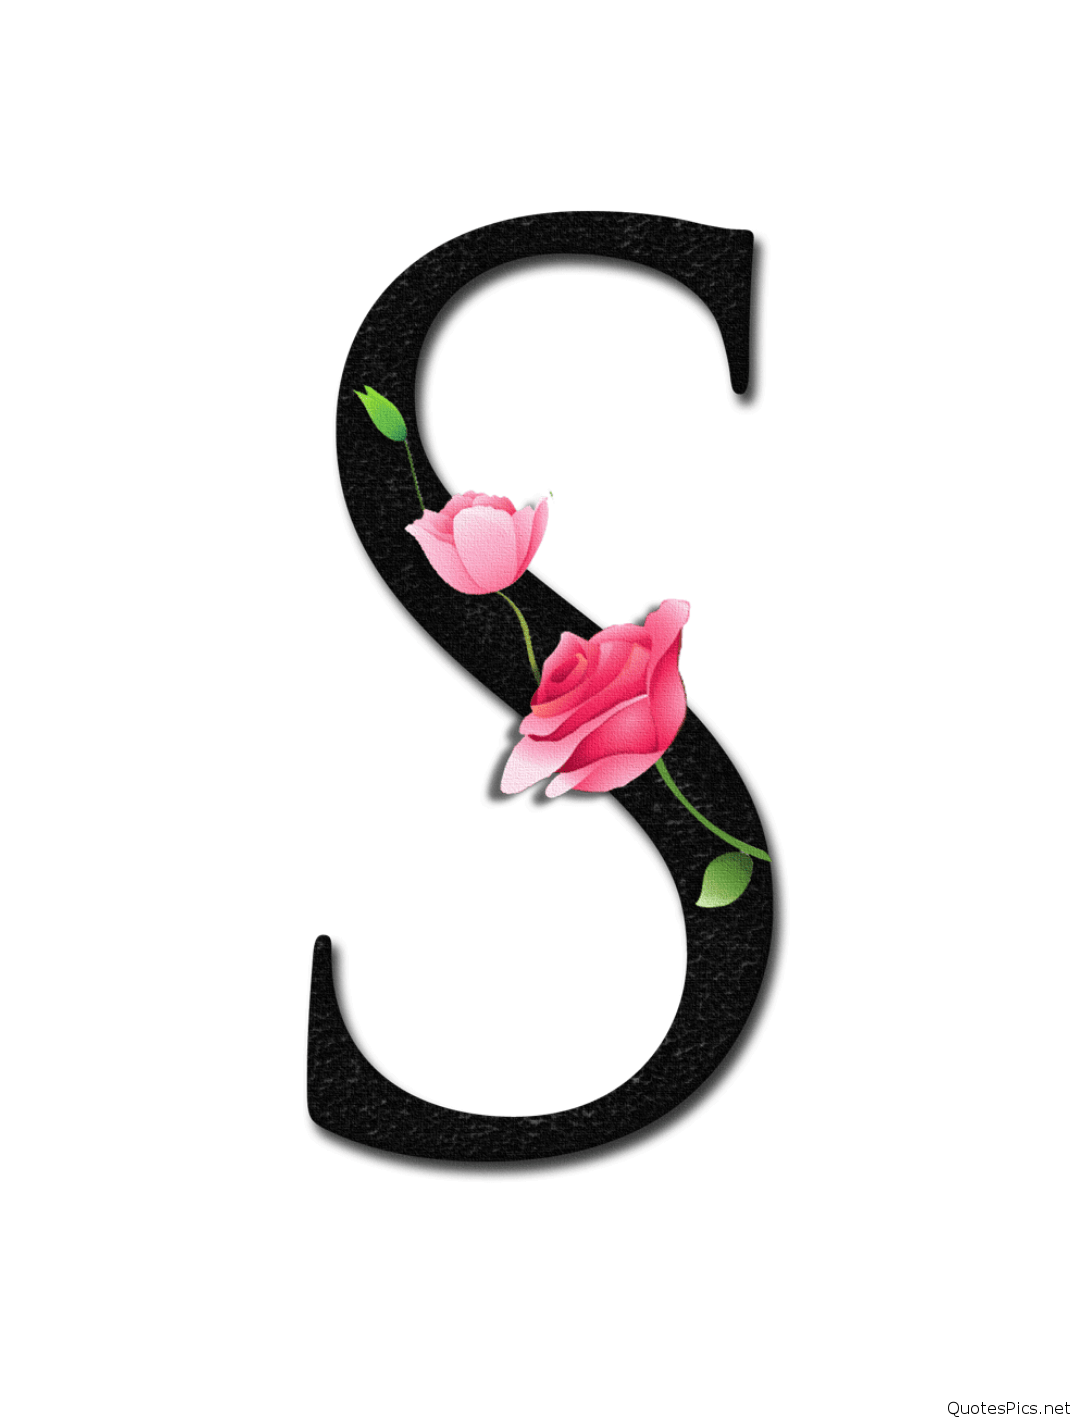 S Letter Image, S Letter Logo, S Letter Design, S Letter Tattoo